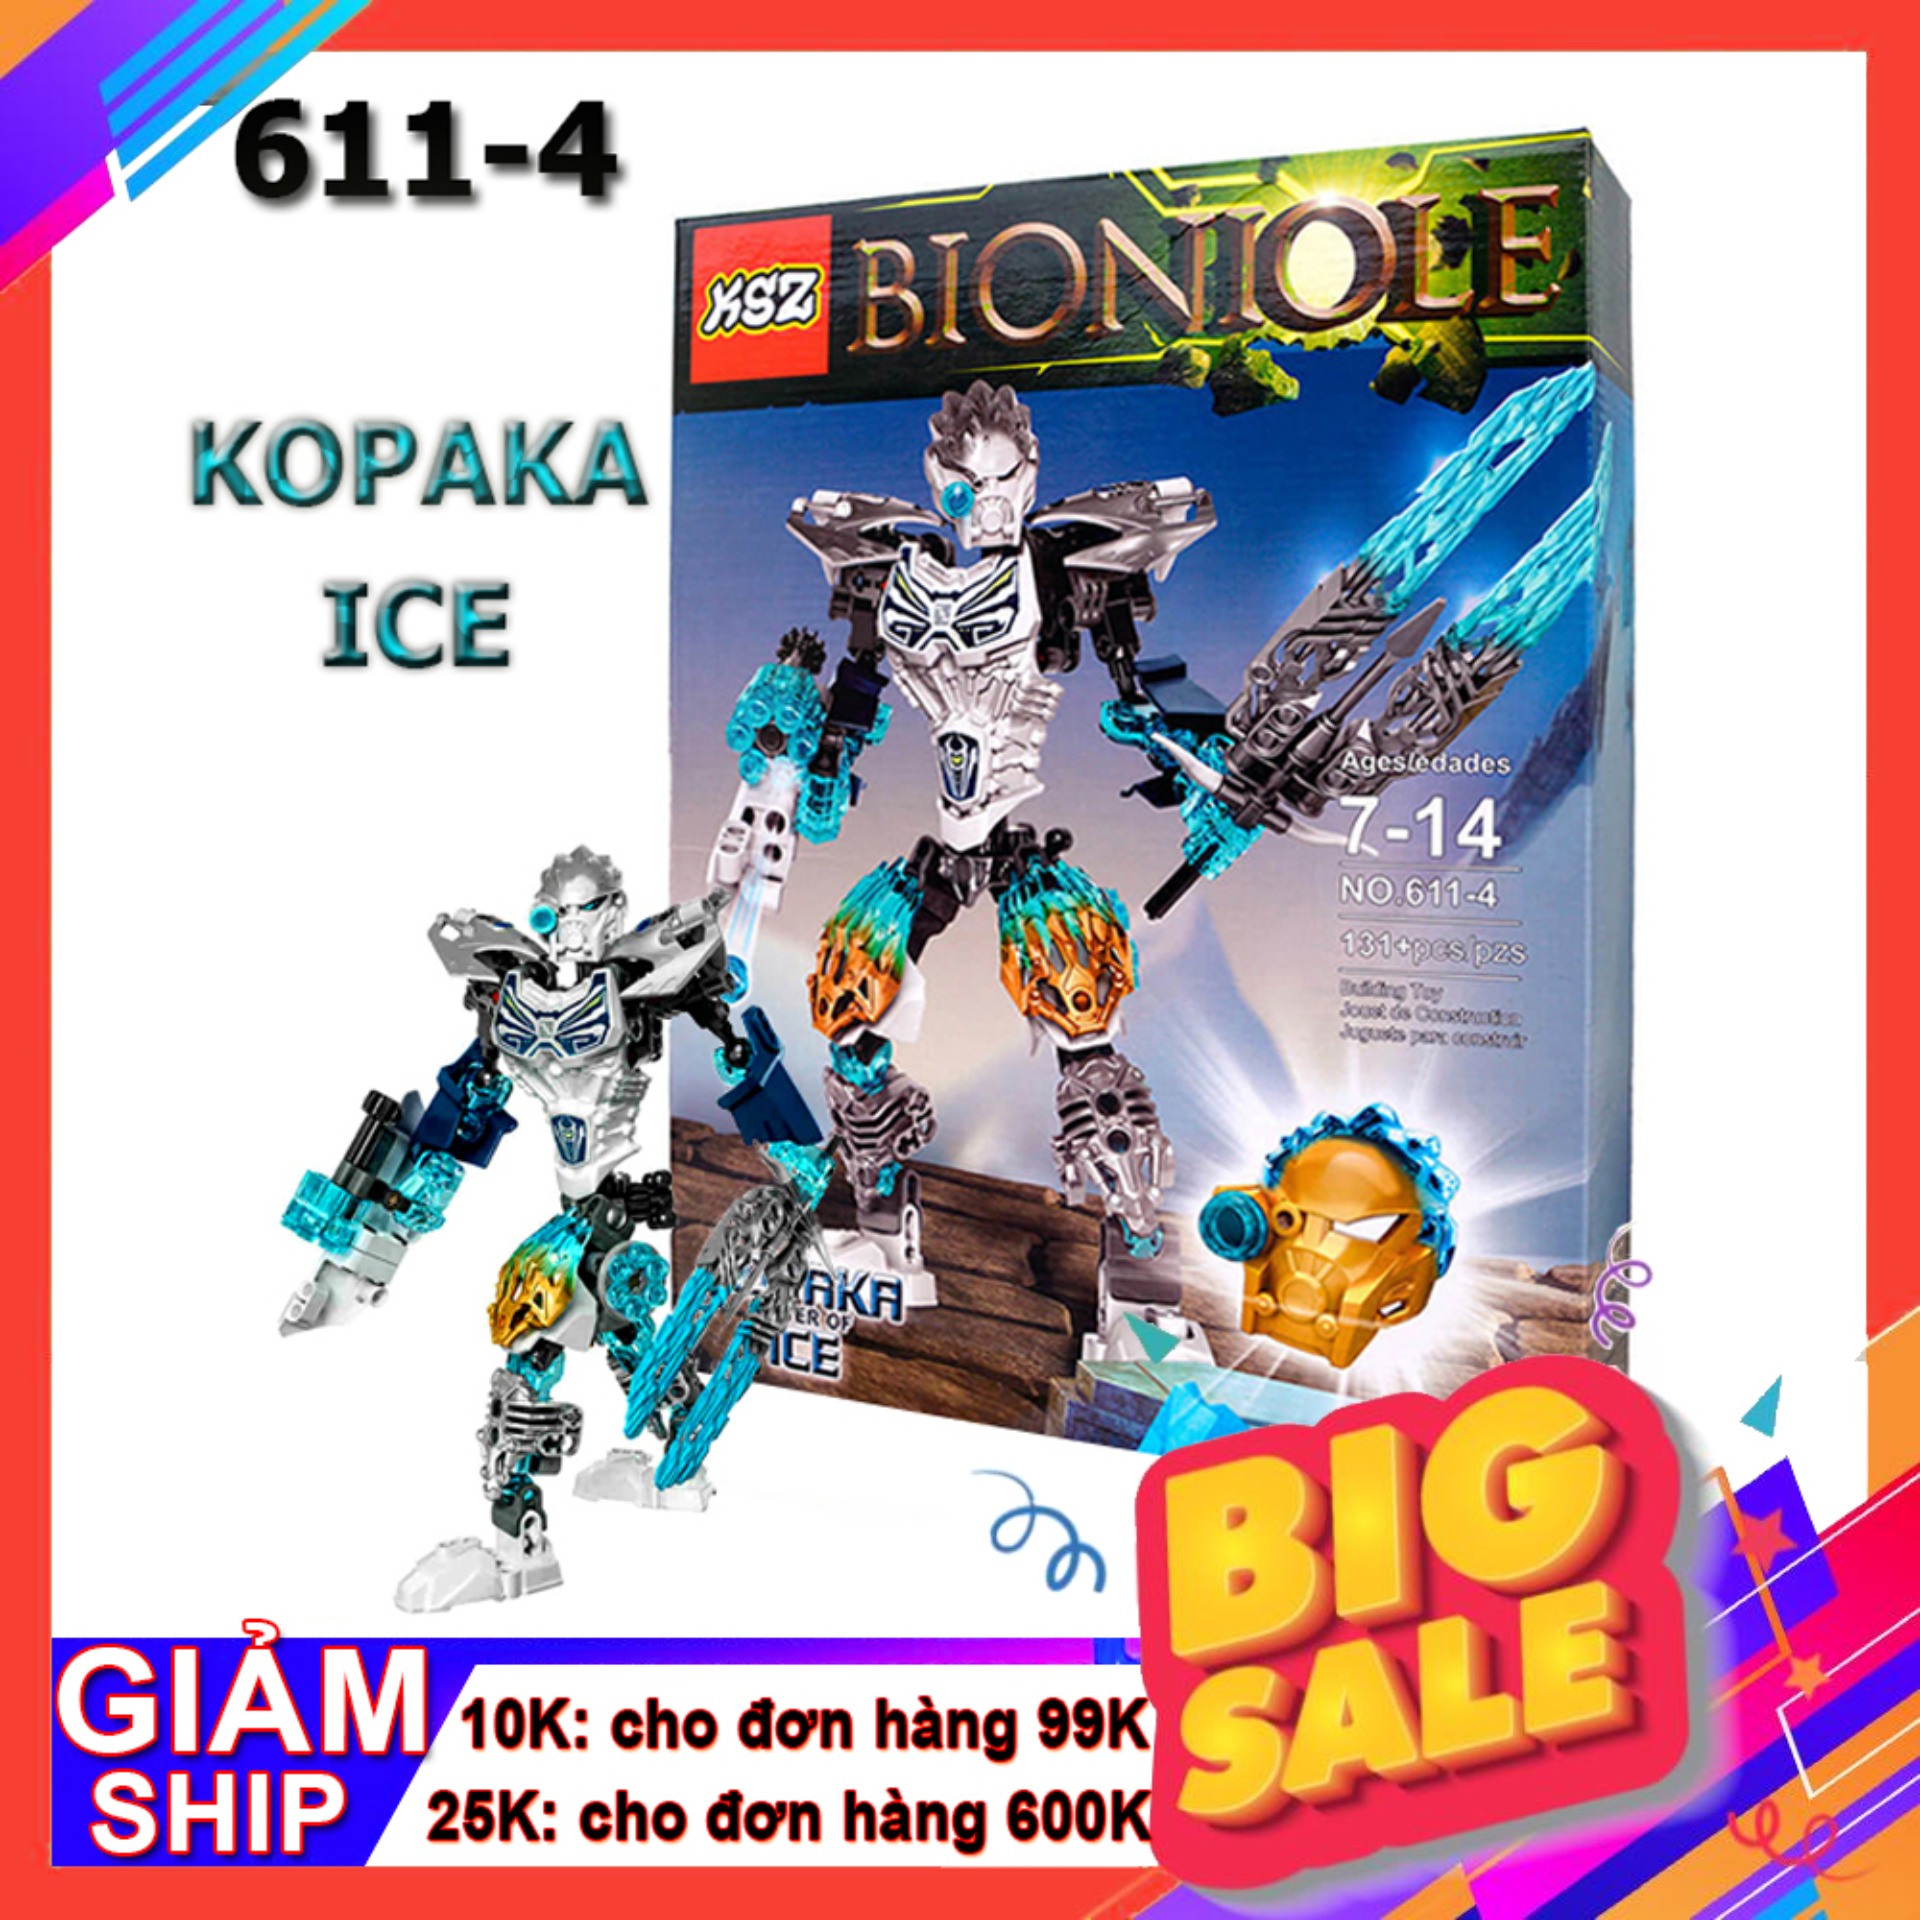 Đồ chơi ghép hình Bionicle 611-4 Kopaka Ice